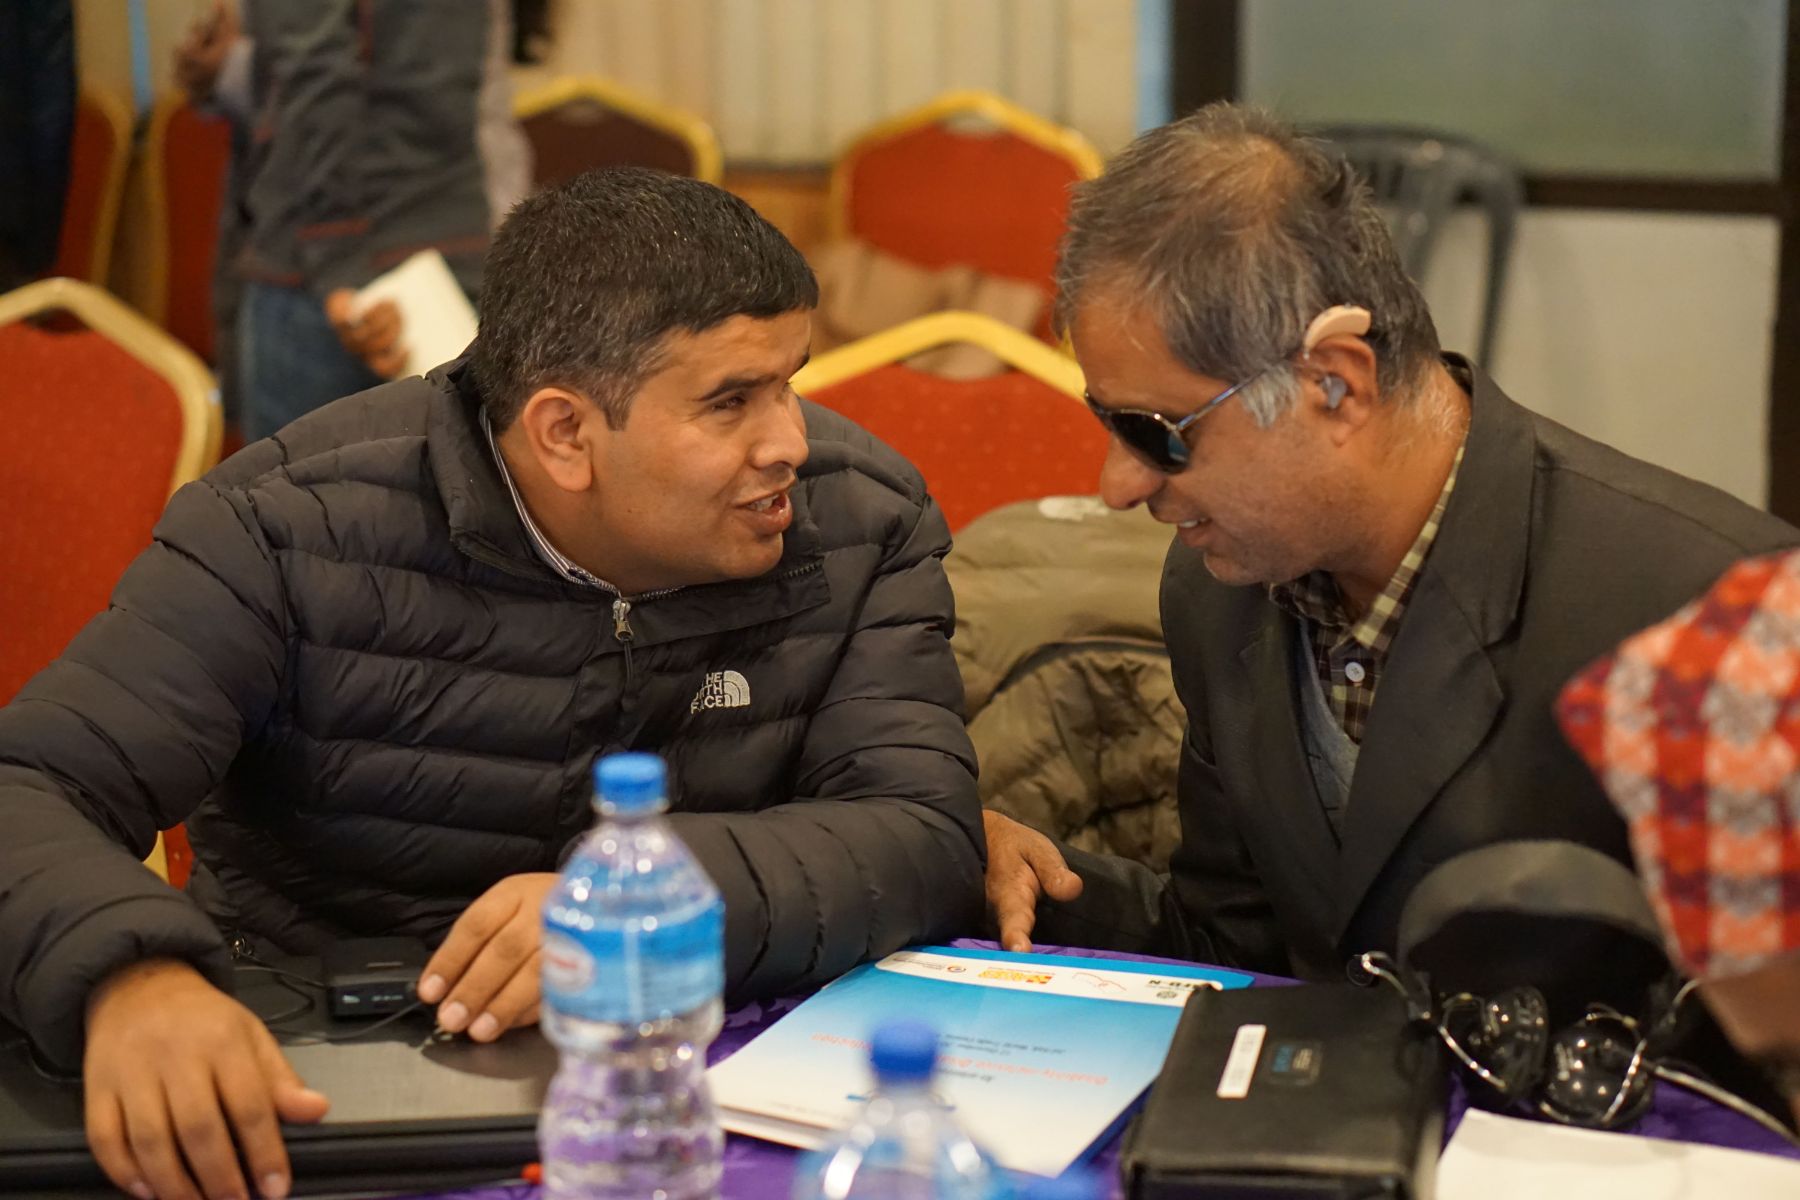 asb-nepal-workshop-inklusive-katastrophenvorsorge-teilnehmer-mit-behinderung.jpg